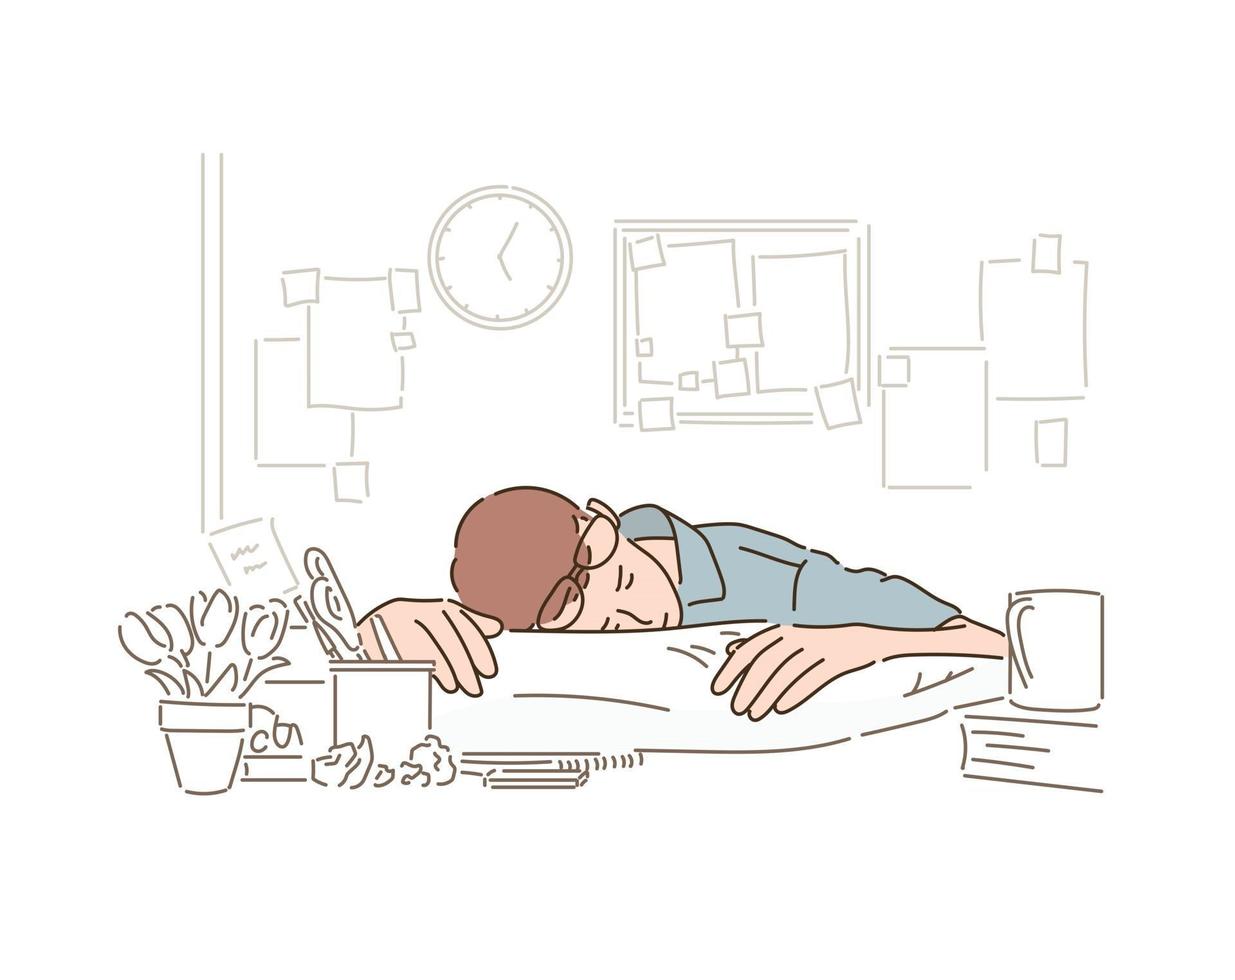 un uomo con gli occhiali sta dormendo sulla scrivania. Illustrazioni di disegno vettoriale in stile disegnato a mano.